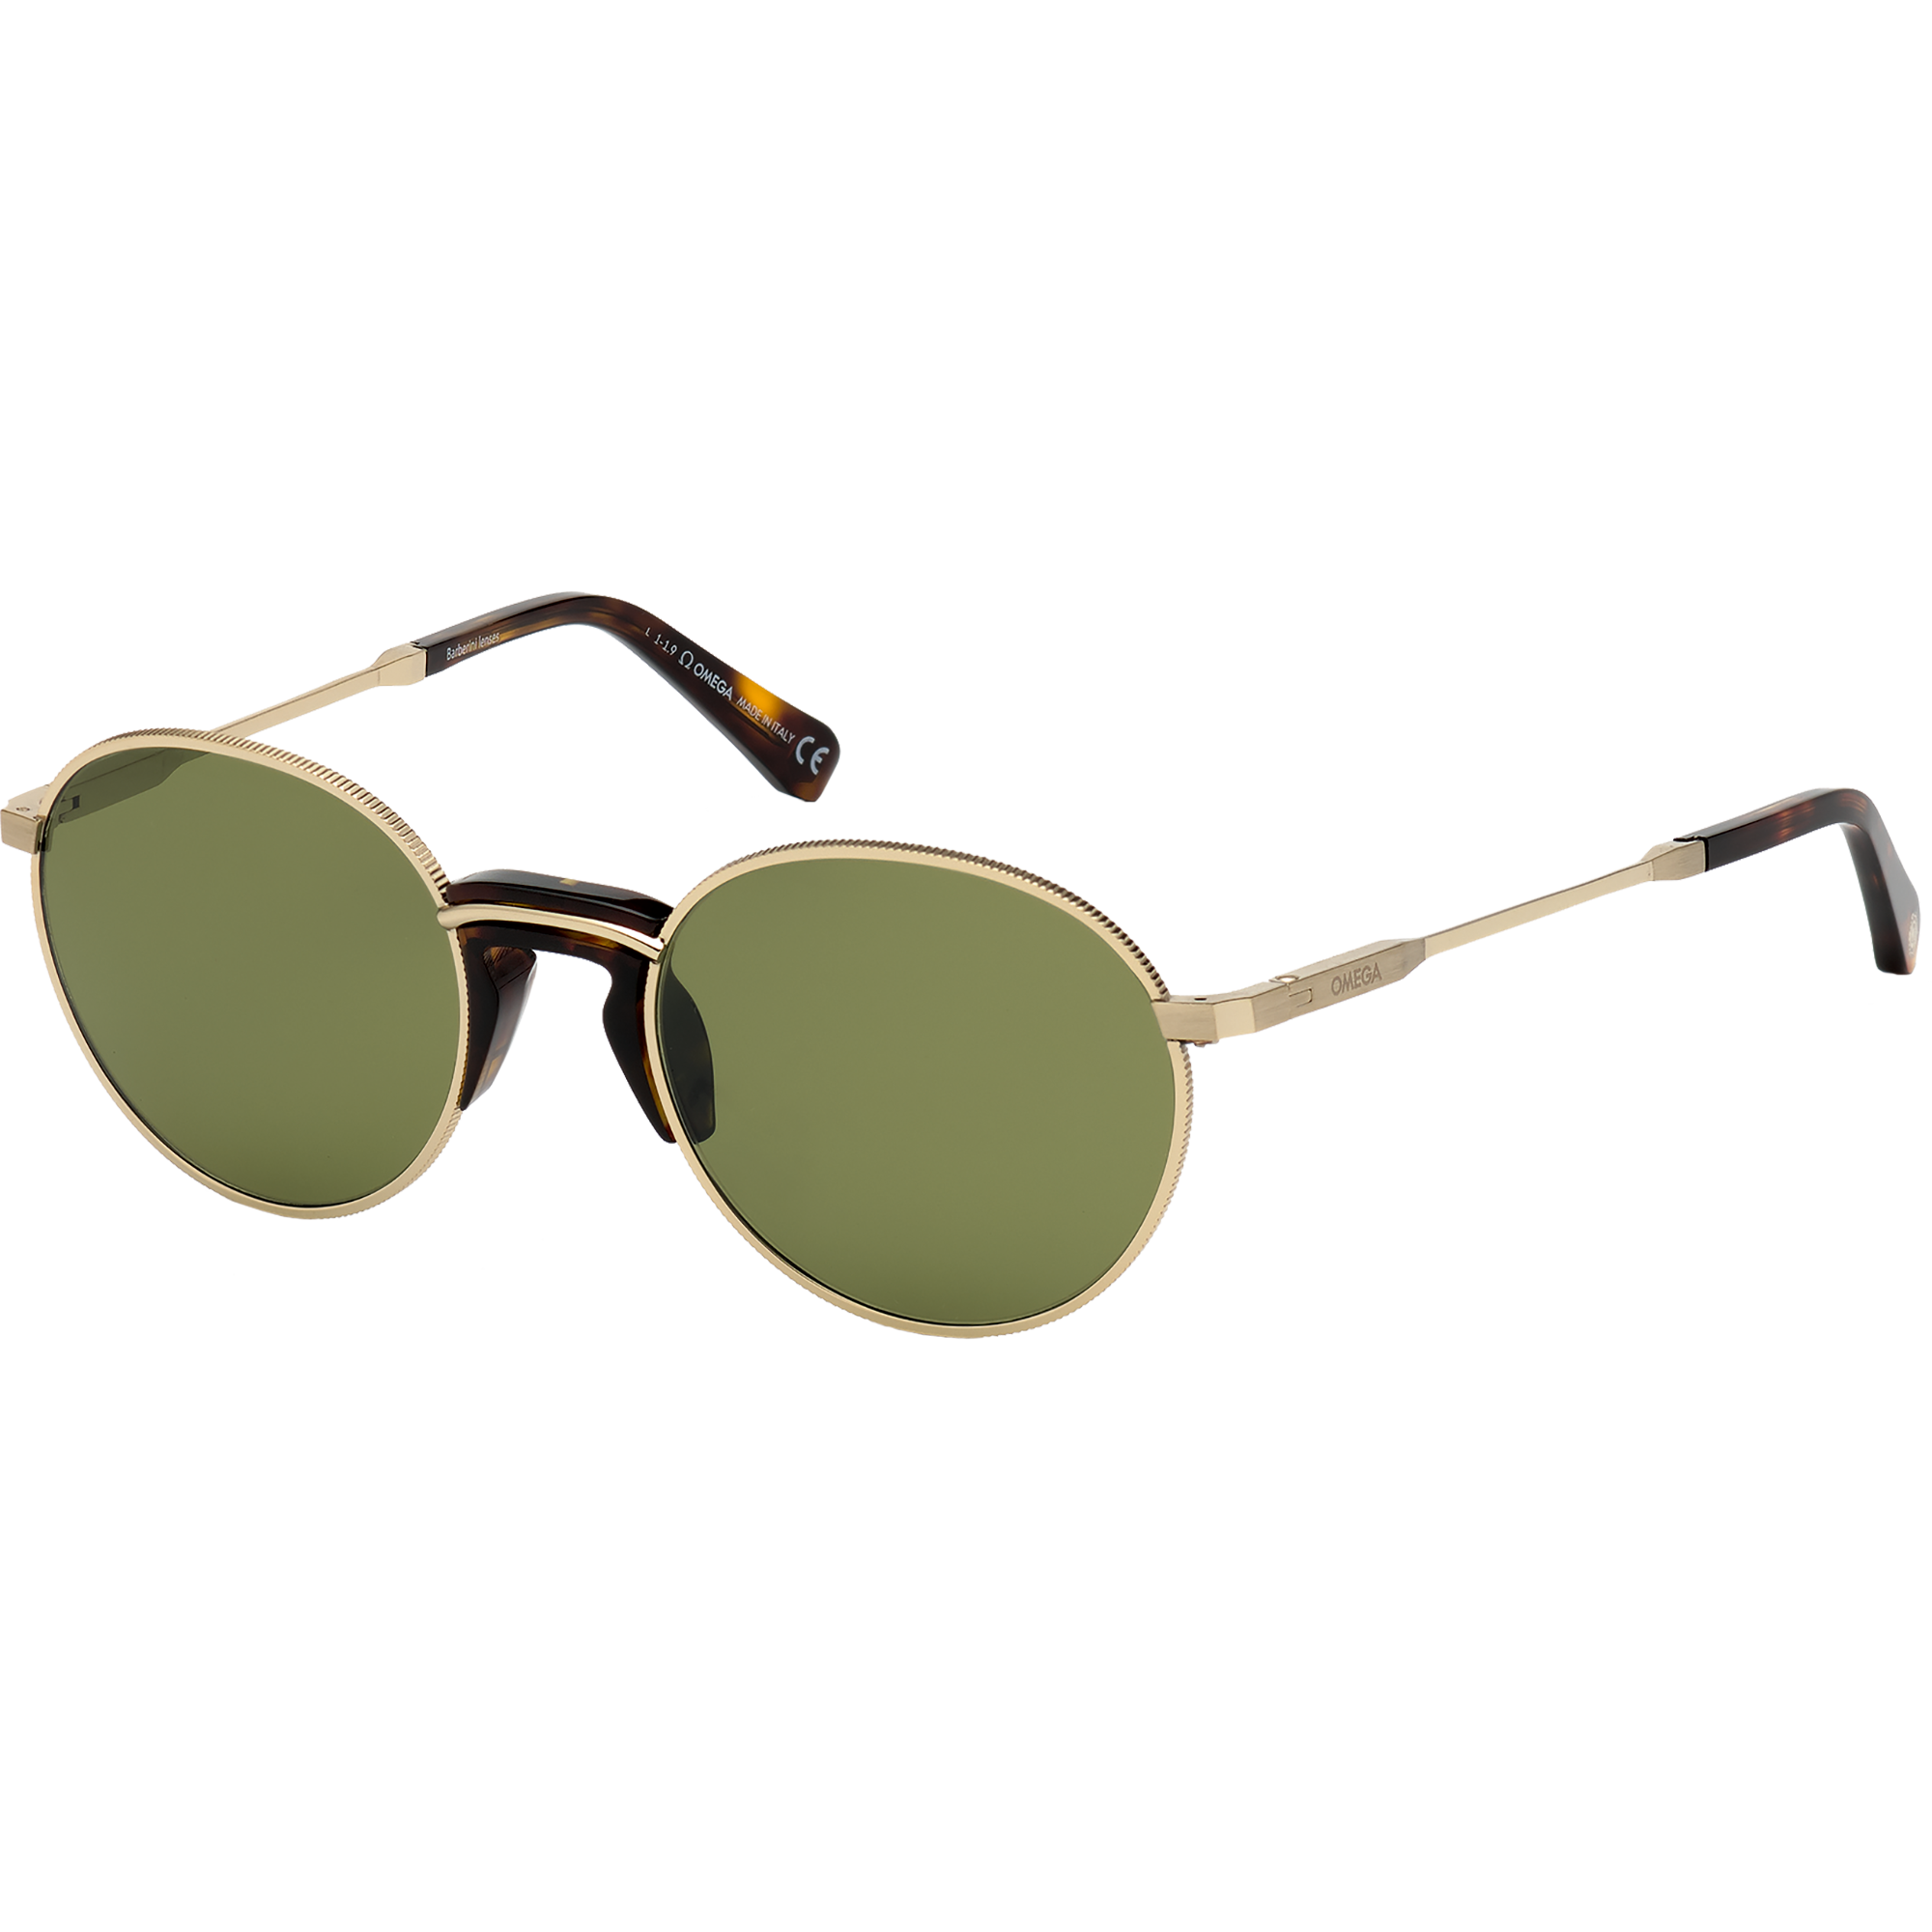 Солнцезащитные очки - Круглая форма, МУЖСКИЕ ОЧКИ - OM0019-H5332V